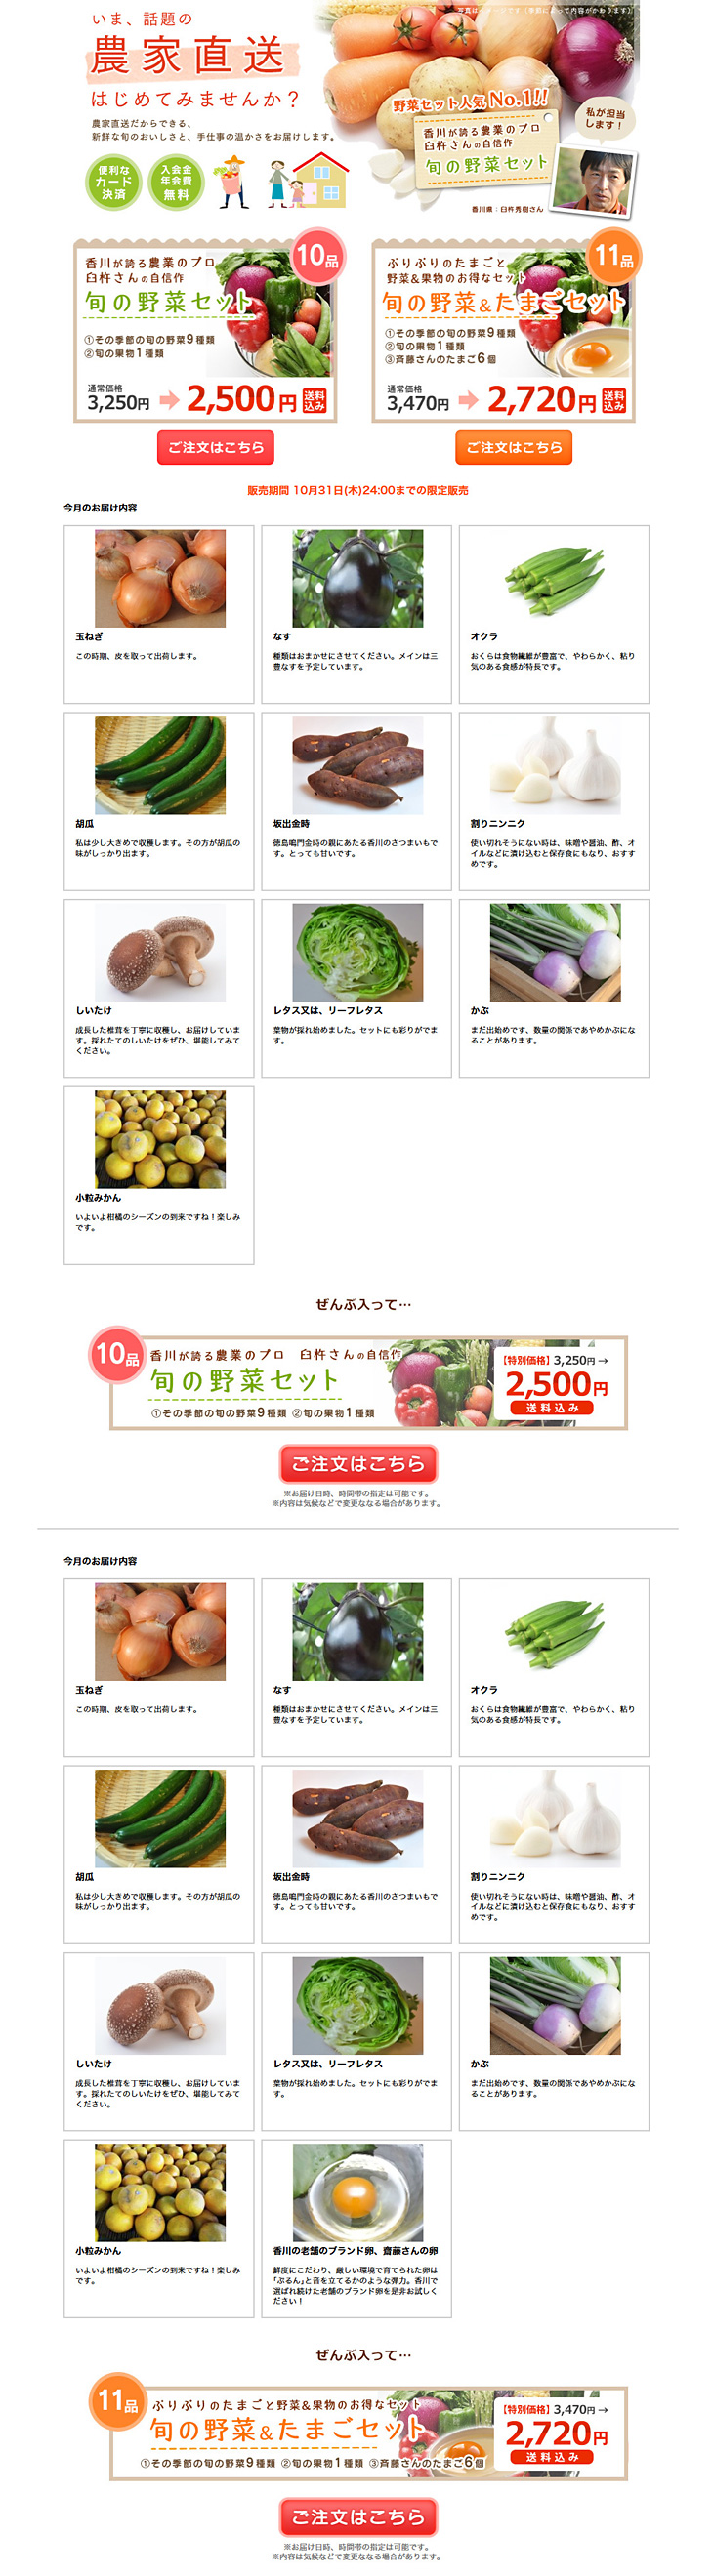 臼杵さんの野菜セット_pc_1